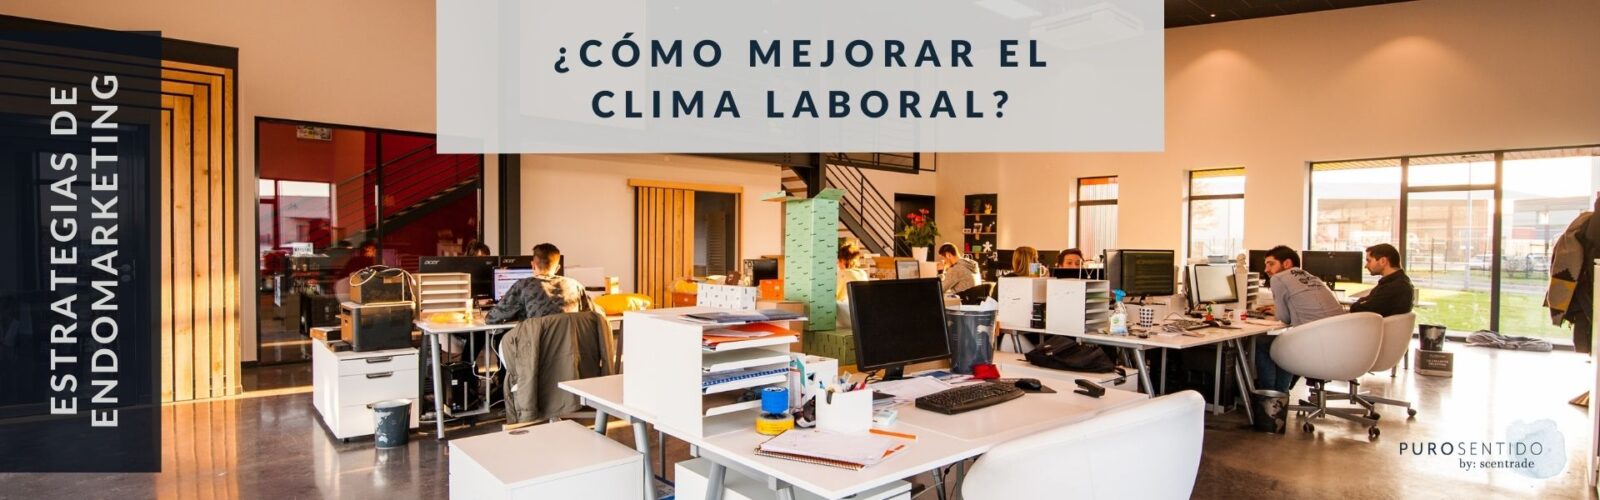 Estrategias de endomarketing ¿Cómo mejorar el clima laboral? Imagen de oficina con colores cálidos